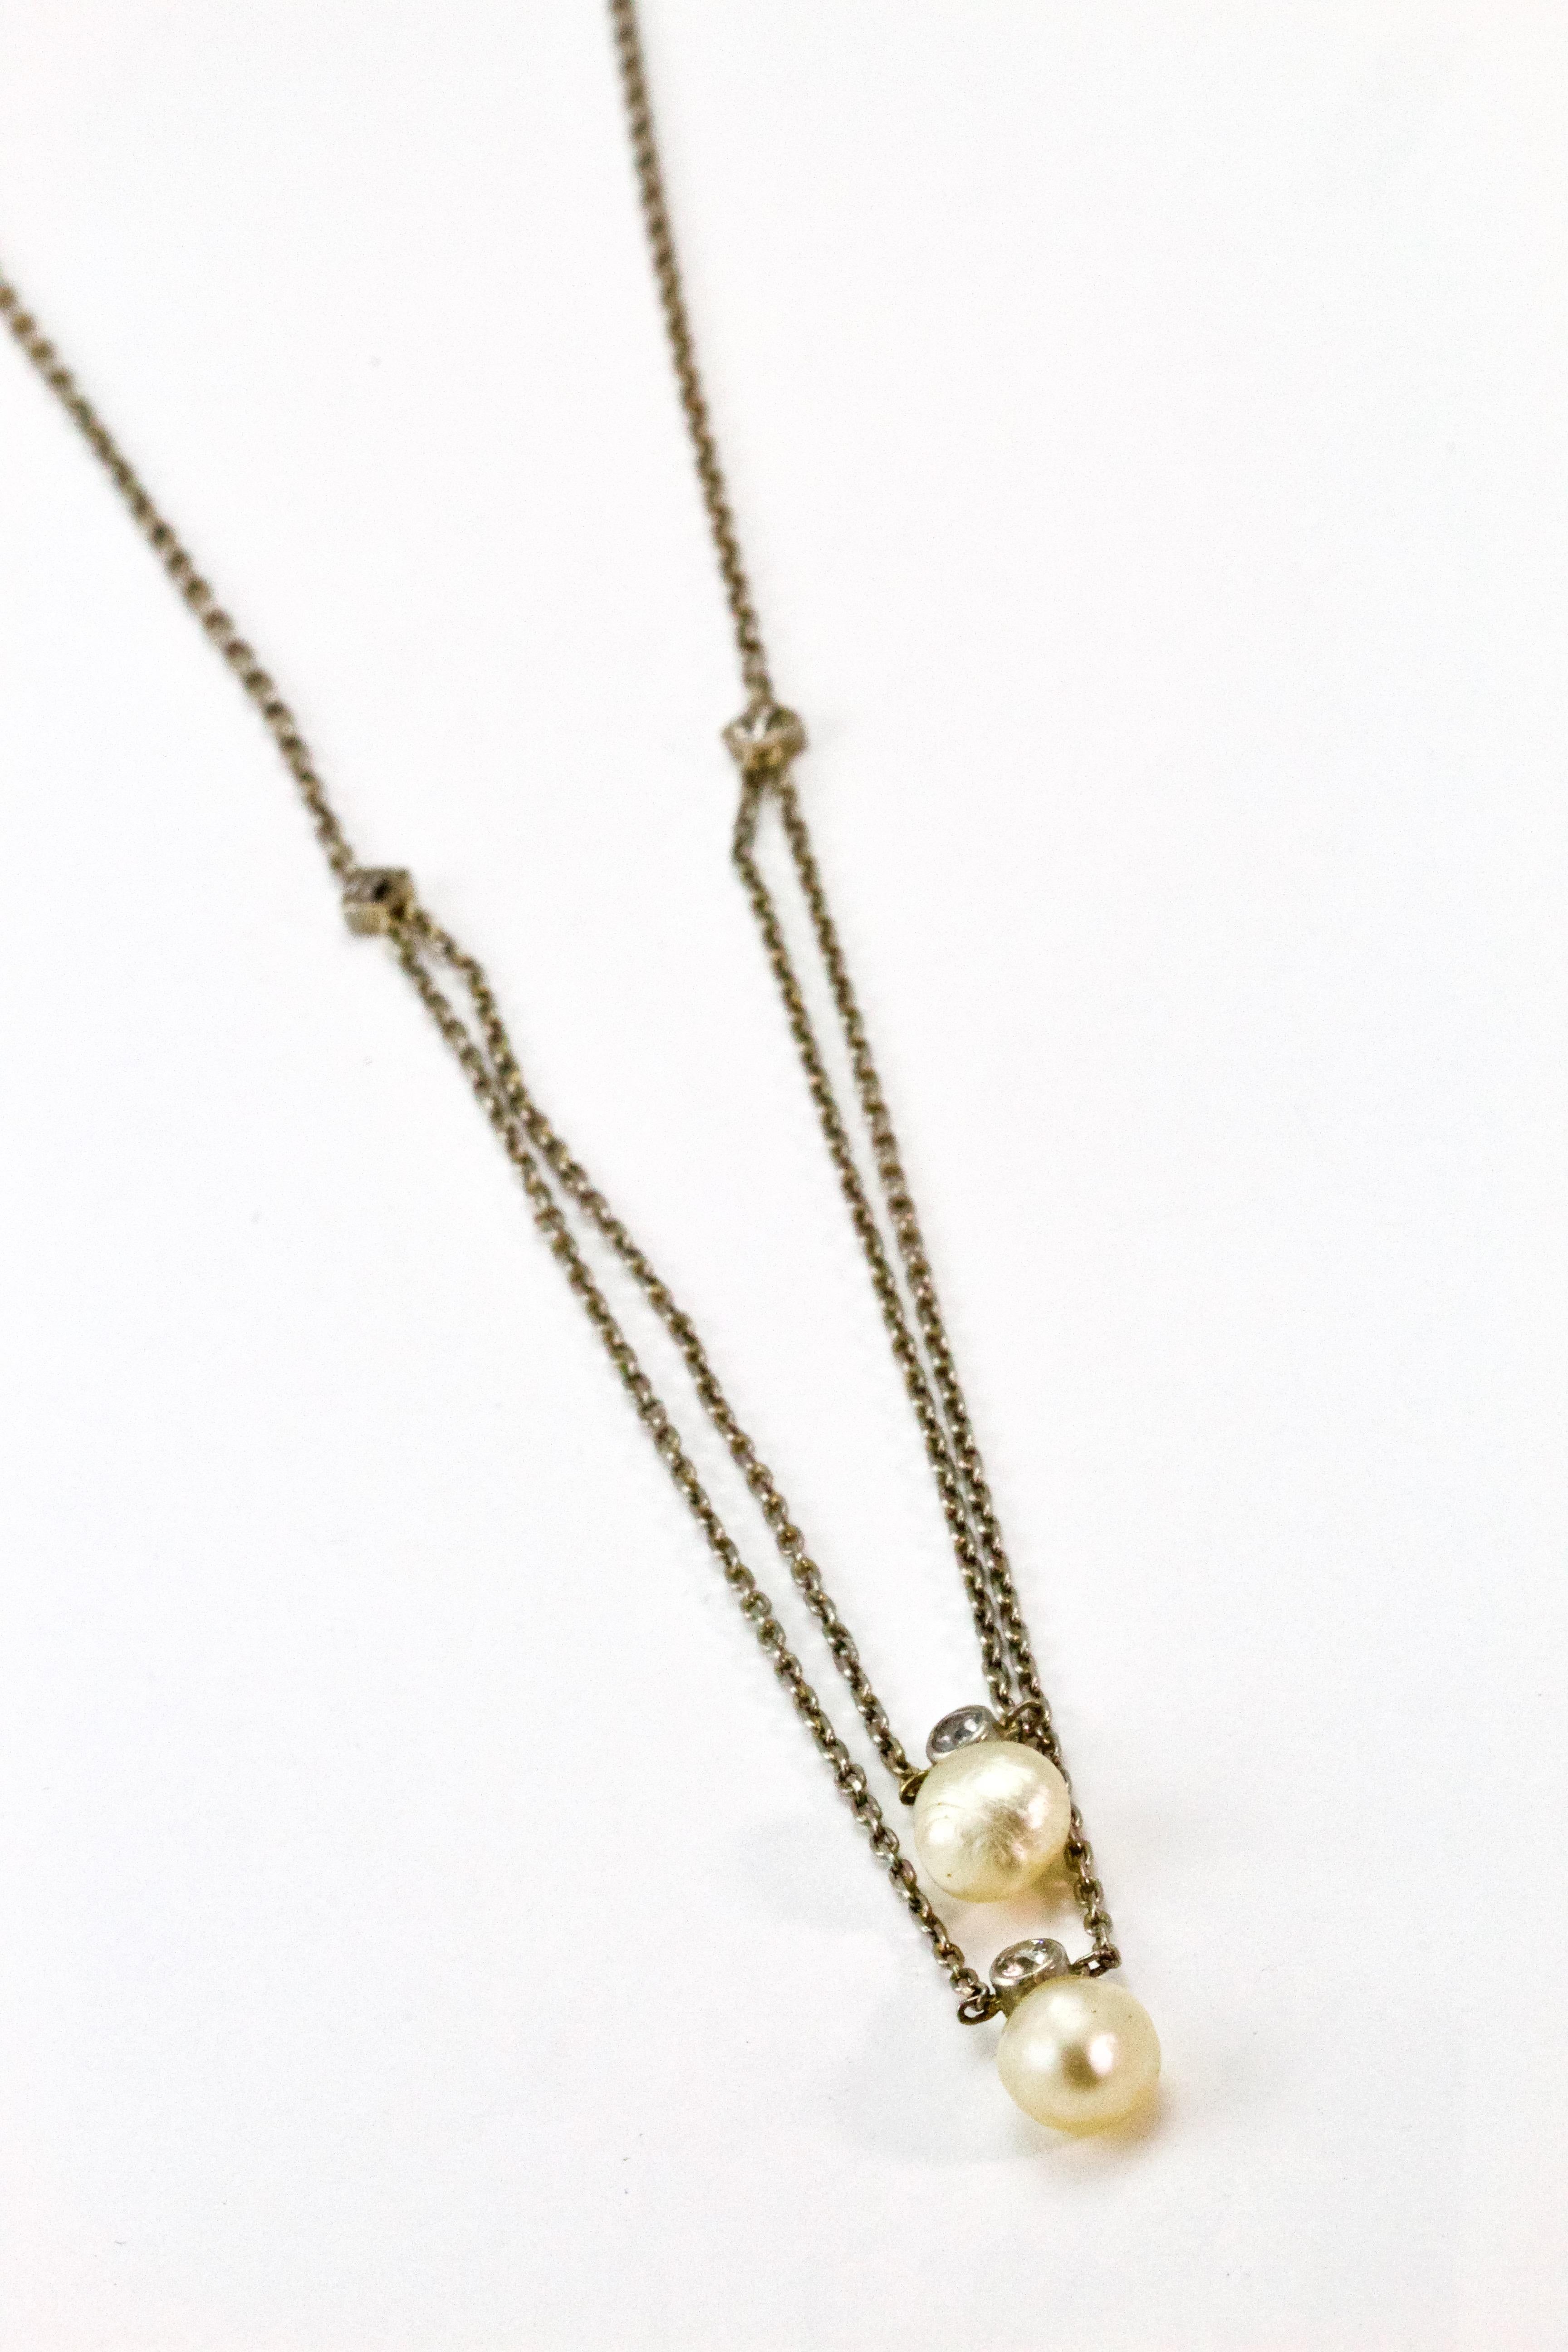 Collier Edouardien en platine à double rang avec des diamants taillés à la mine ancienne et deux perles naturelles. La chaîne est en platine, de 1,5 mm, avec un fermoir à pression en forme de barillet. Chaque perle est délicatement suspendue à un